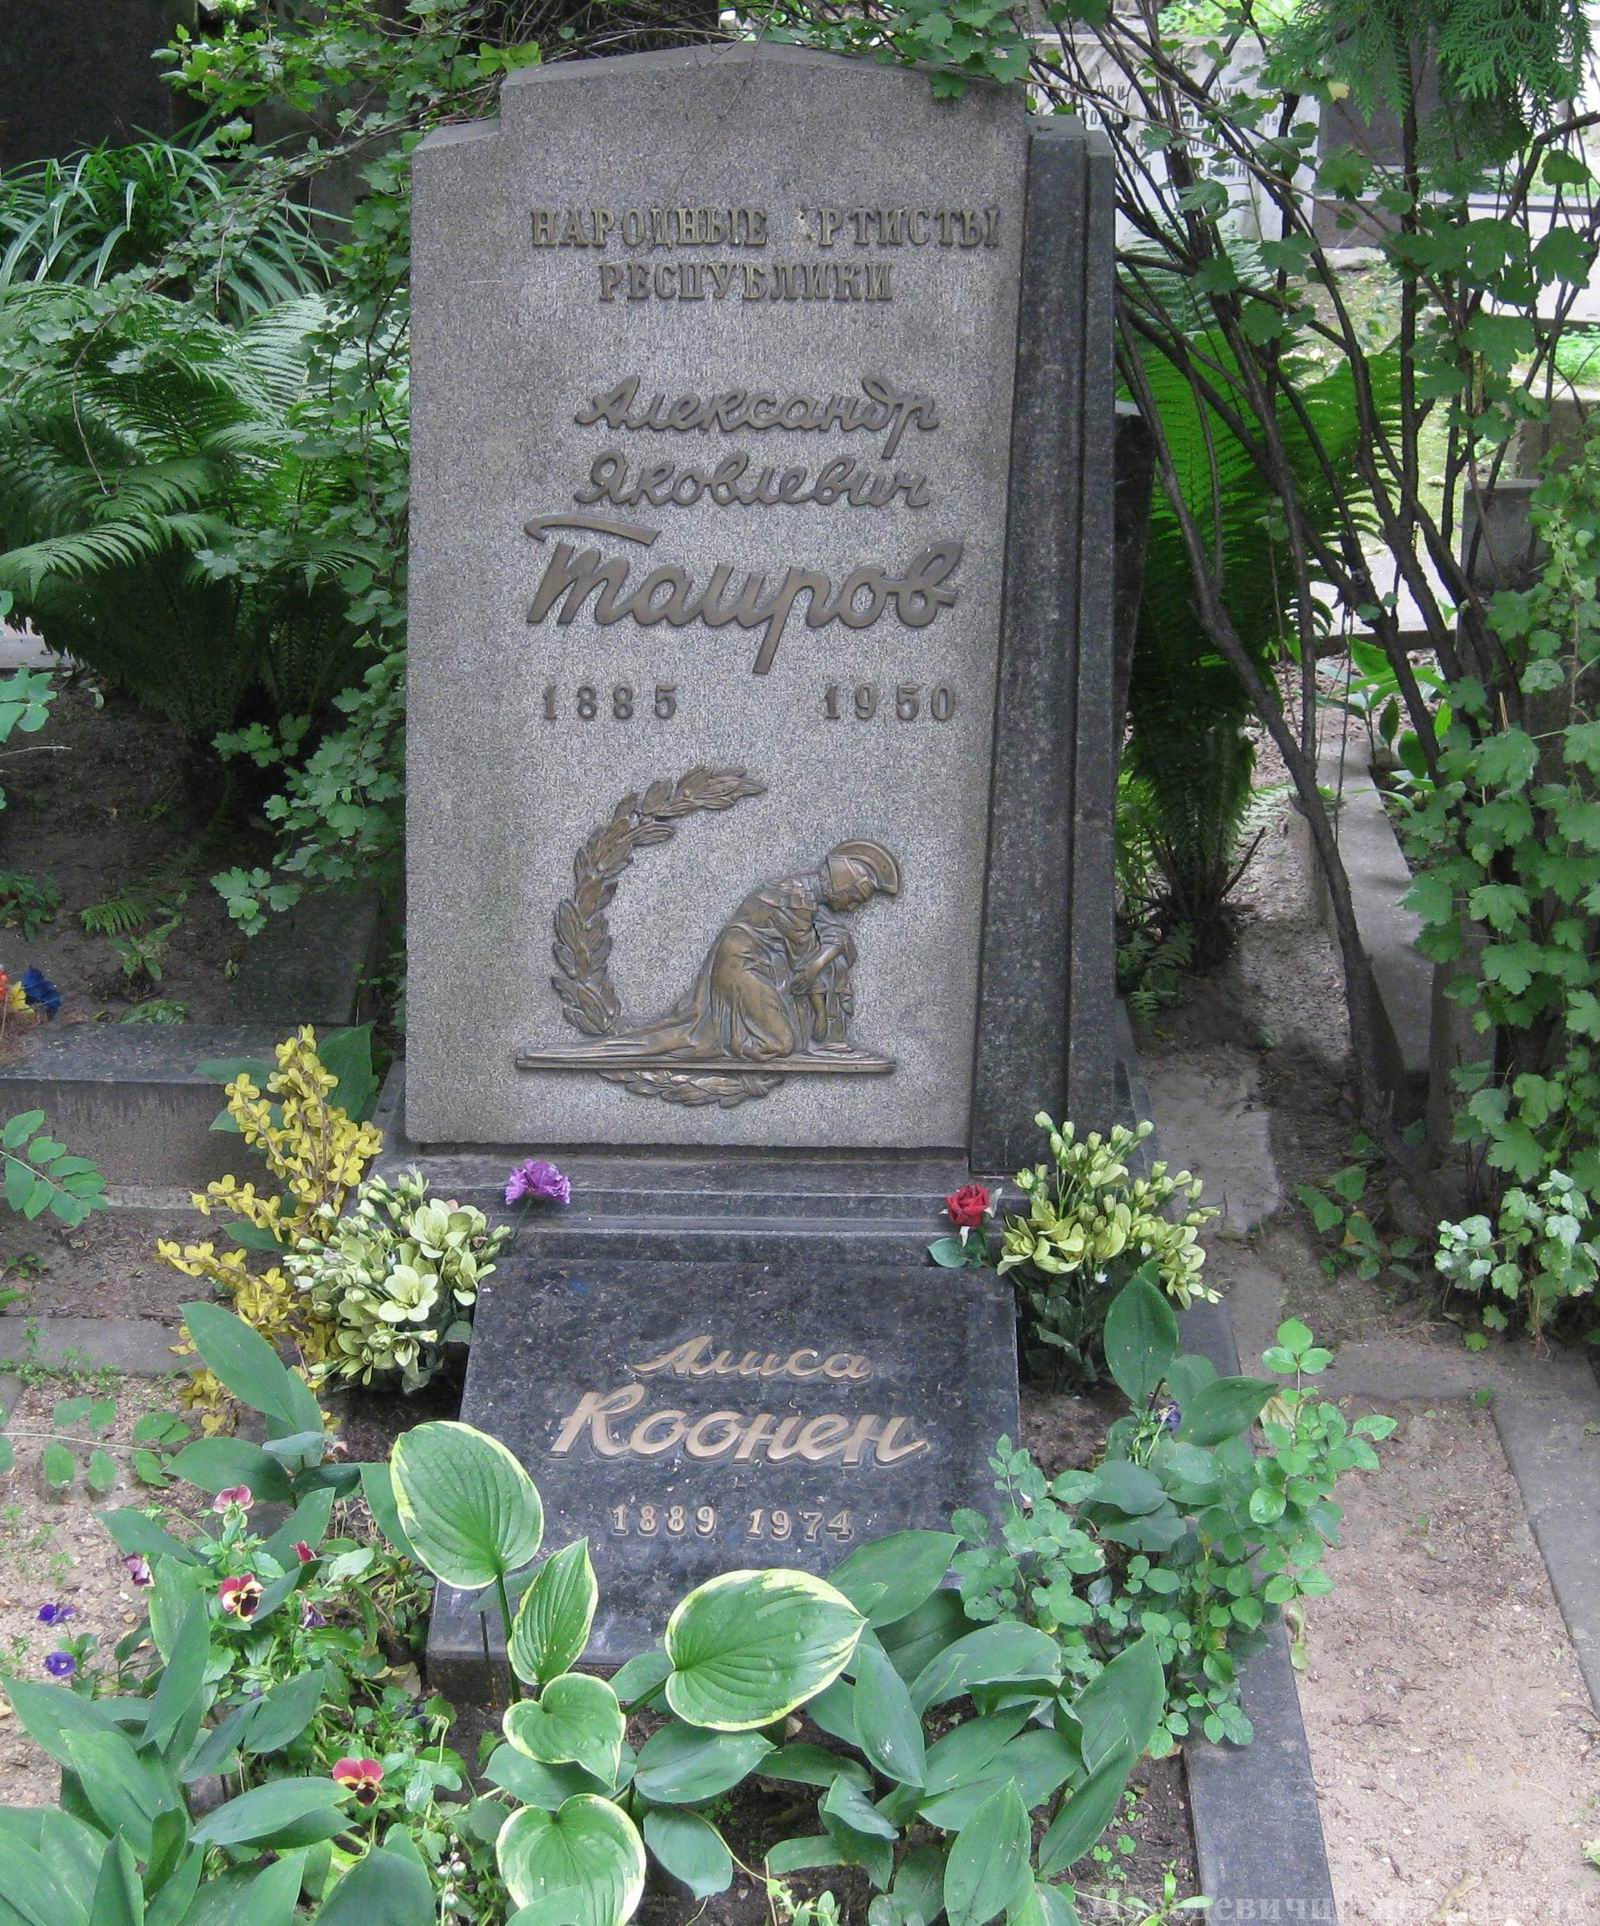 Памятник на могиле Таирова А.Я. (1885-1950), ск. Д.Народницкий, арх. Е.Розенблюм, на Новодевичьем кладбище (2-14-7). Нажмите левую кнопку мыши чтобы увидеть деталь памятника.